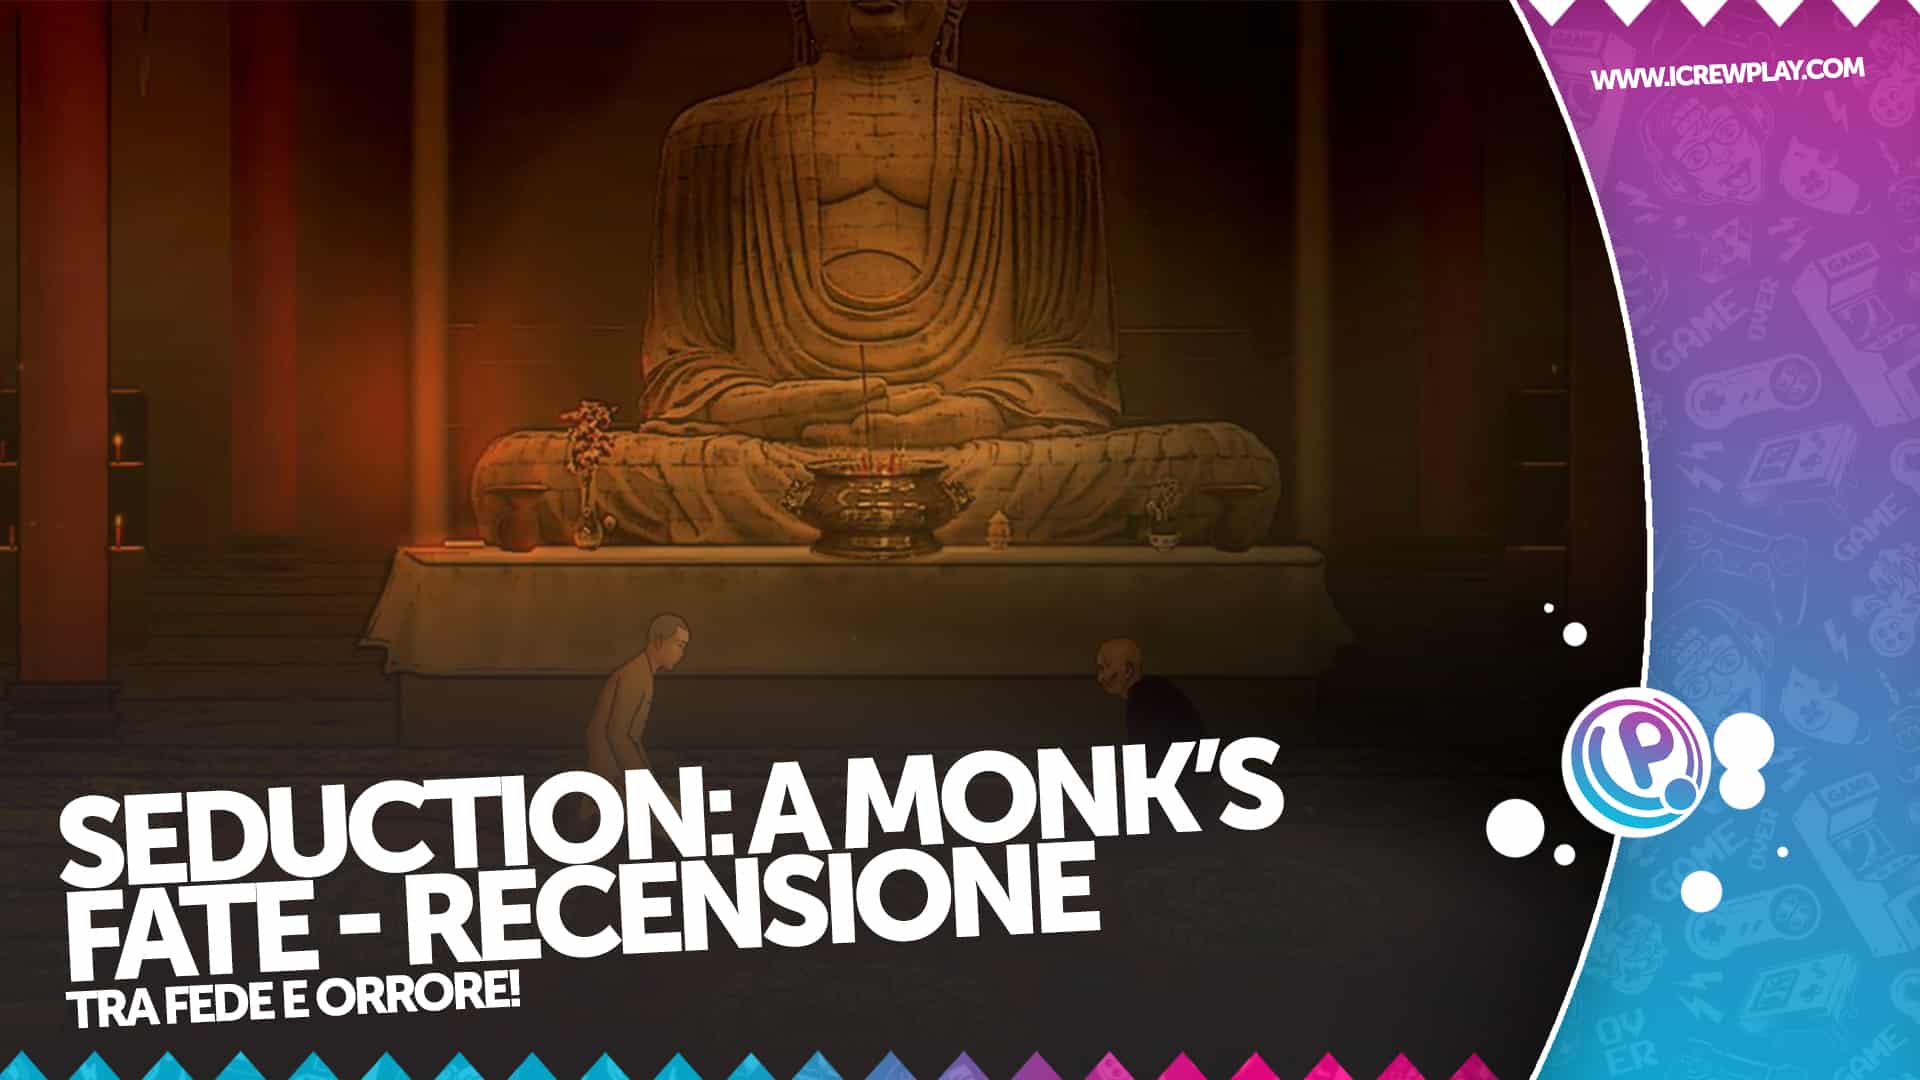 Seduction: A Monk's Fate - Recensione per Nintendo Switch 20